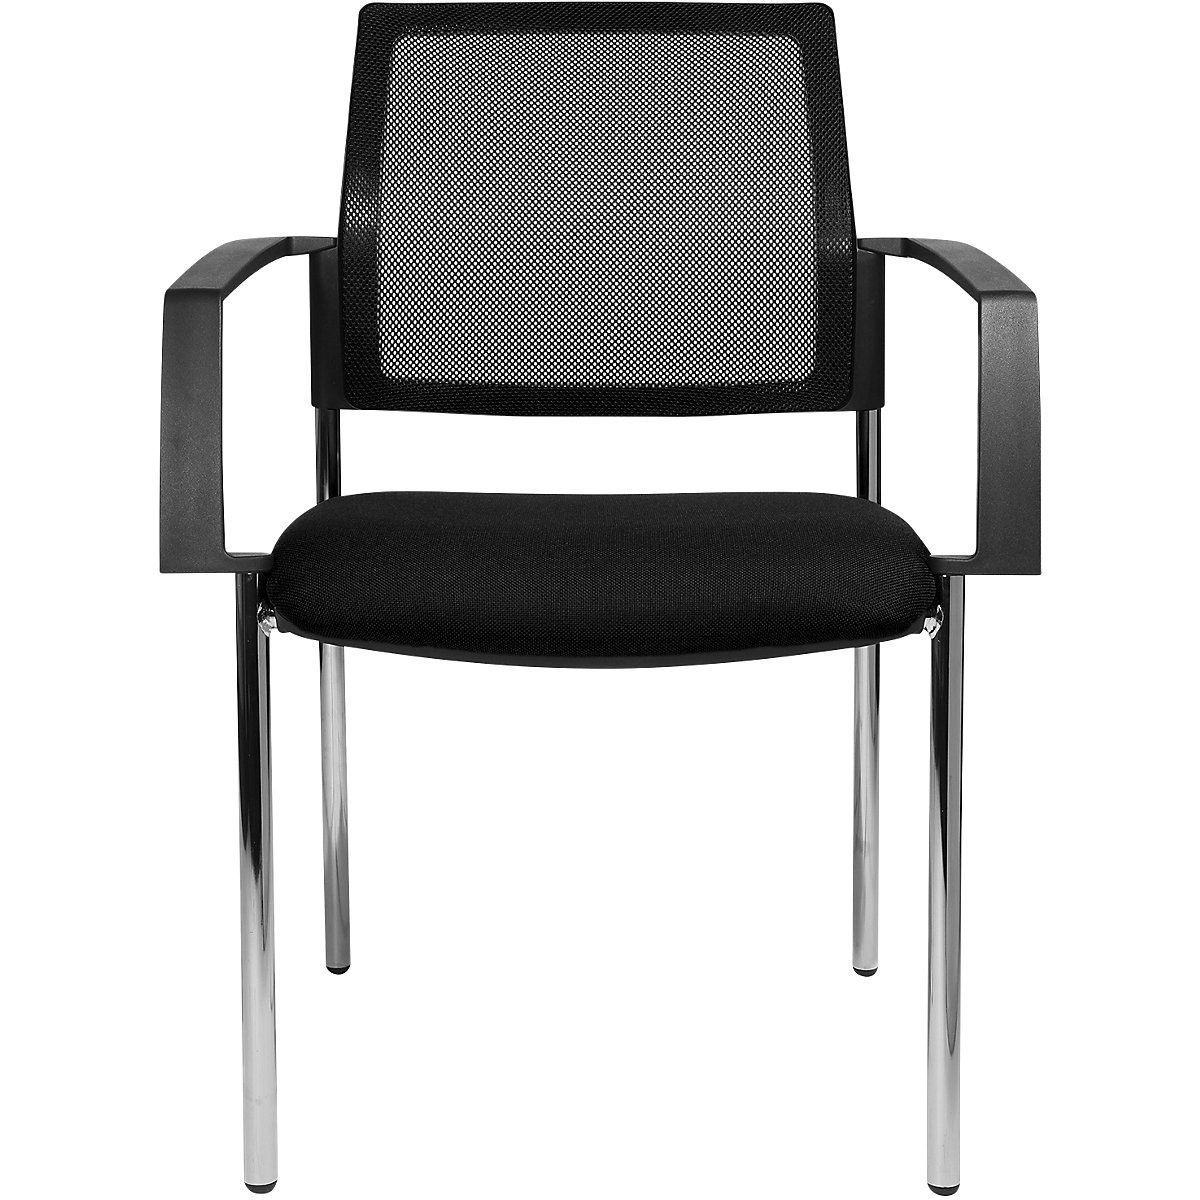 Stohovacia stolička zo sieťoviny – Topstar, so 4 nohami, OJ 2 ks, sedadlo čierna, podstavec chrómový-4